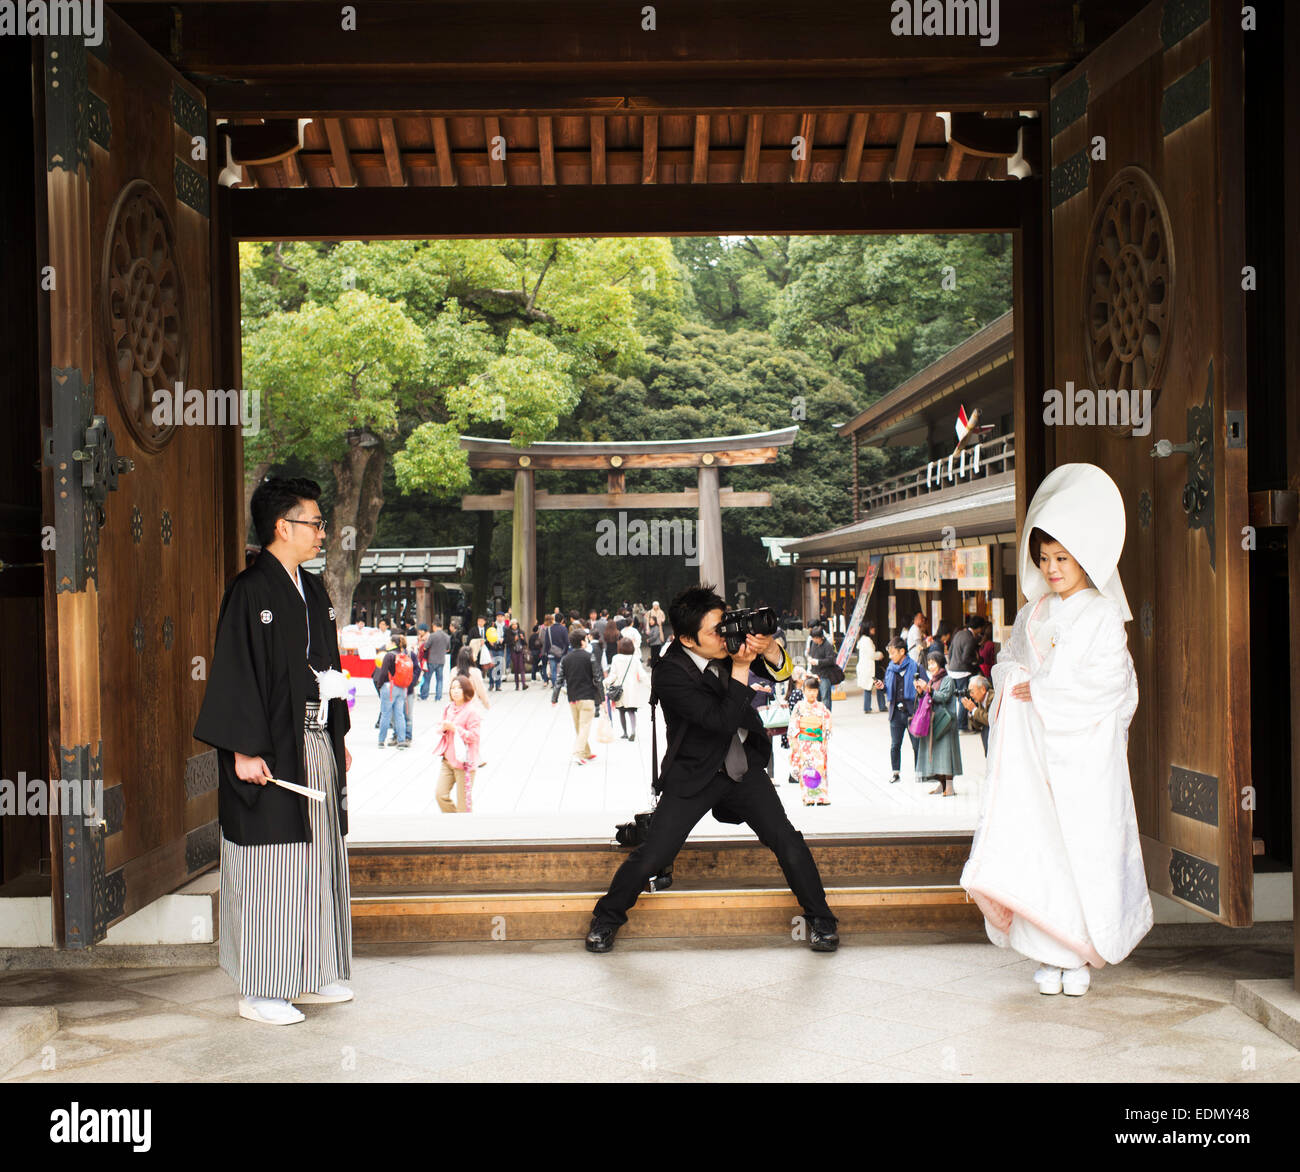 Japanischen Hochzeitszeremonie im Meiji-Schrein, Tokyo, Japan. Stockfoto